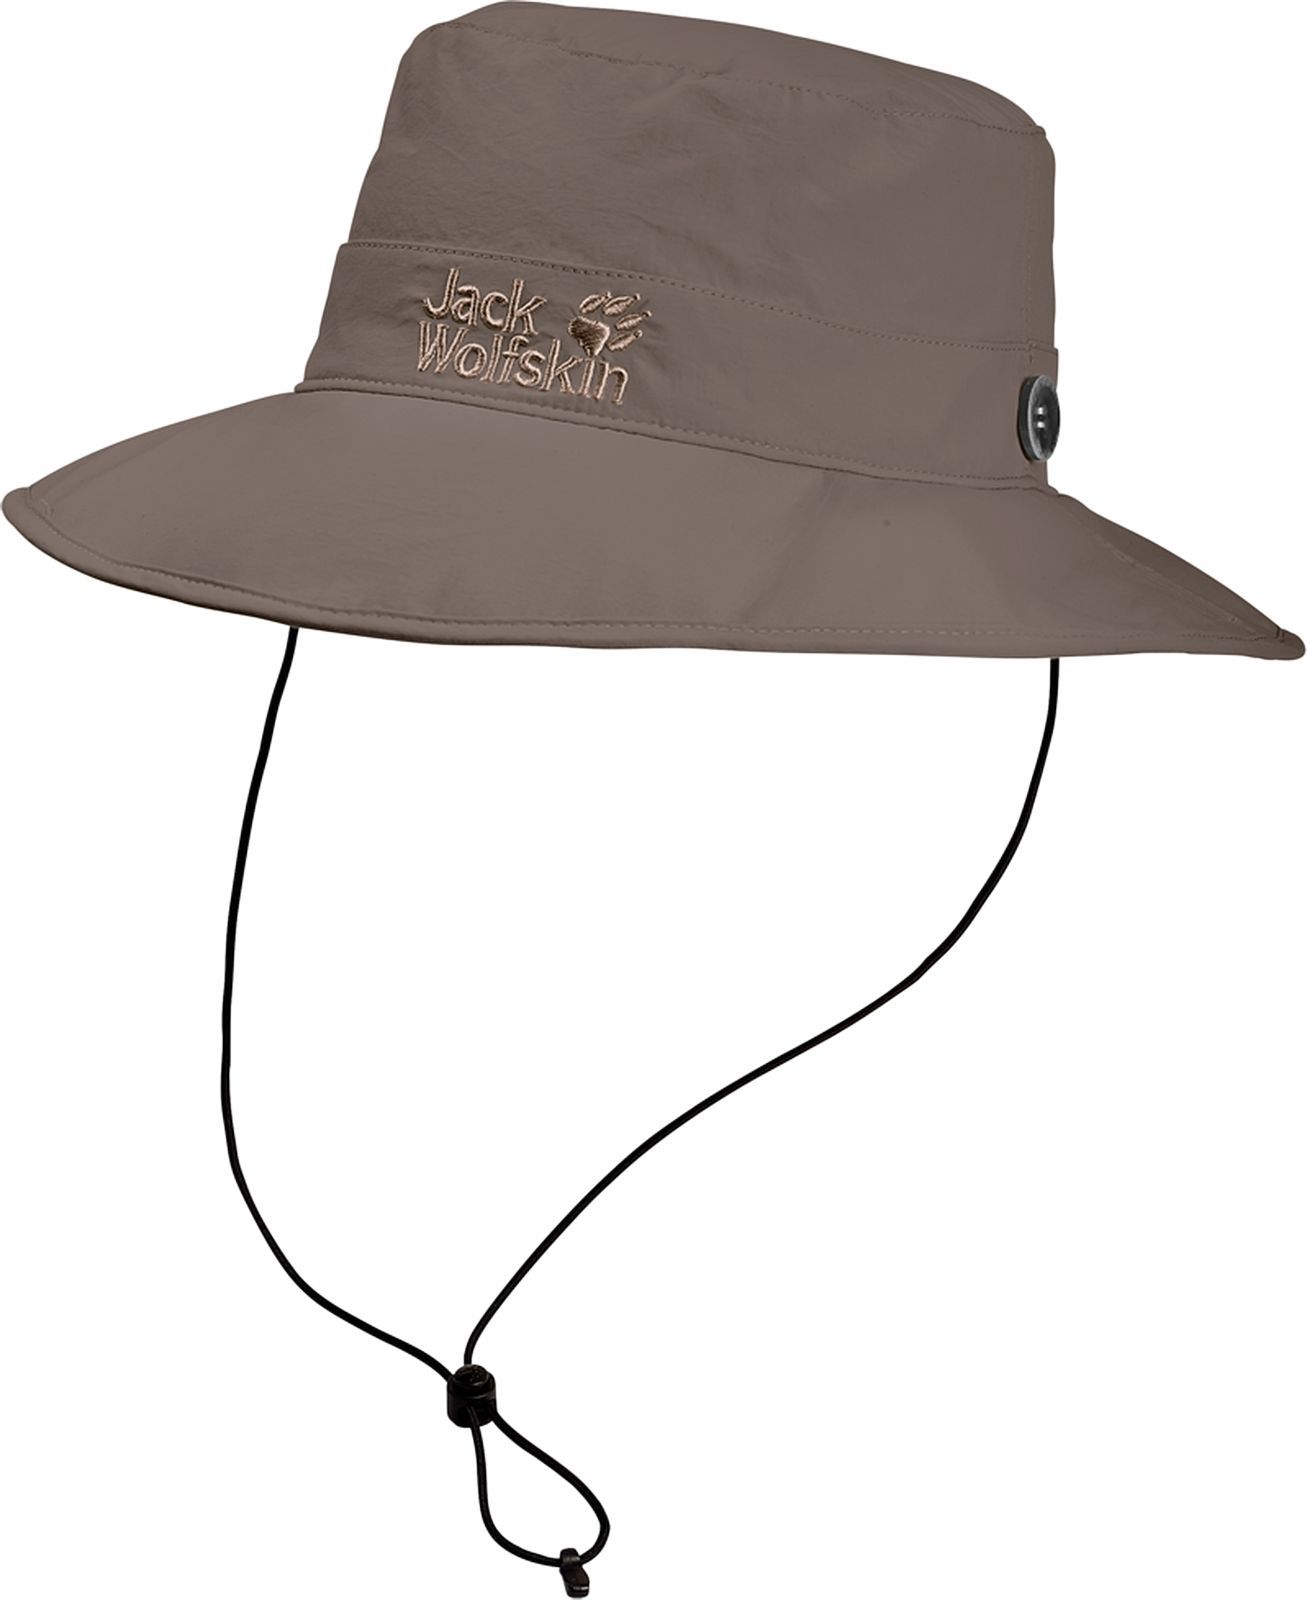  Jack Wolfskin Supplex Mesh Hat, : -. 1902042-5117.  M (54/57)